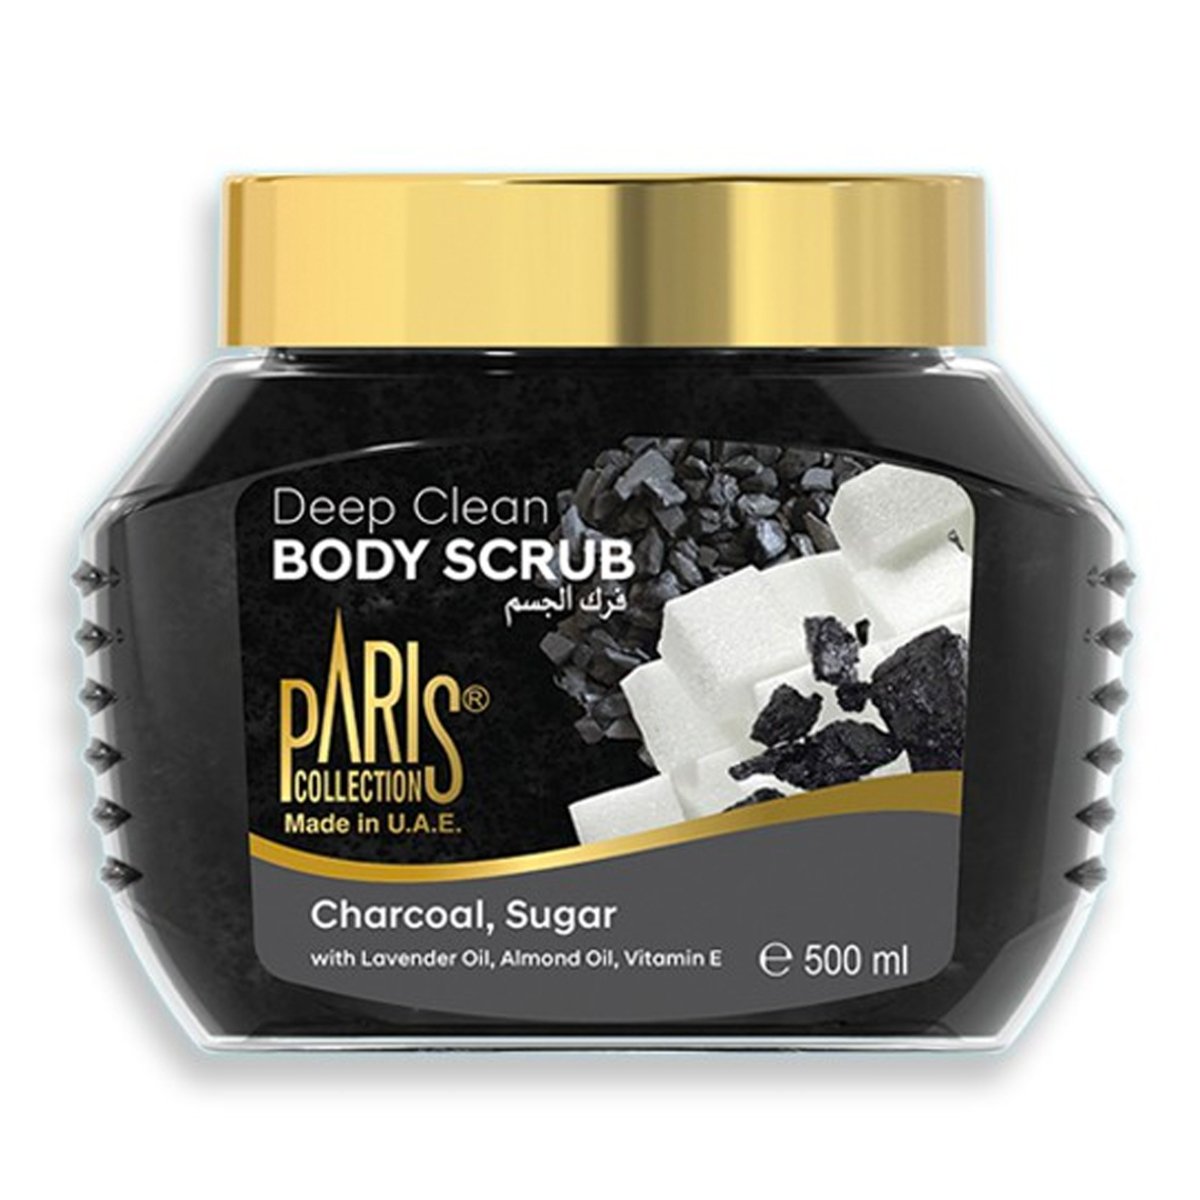 Paris Collection Deep Clean Body Scrub Charcoal,Sugar 500ml